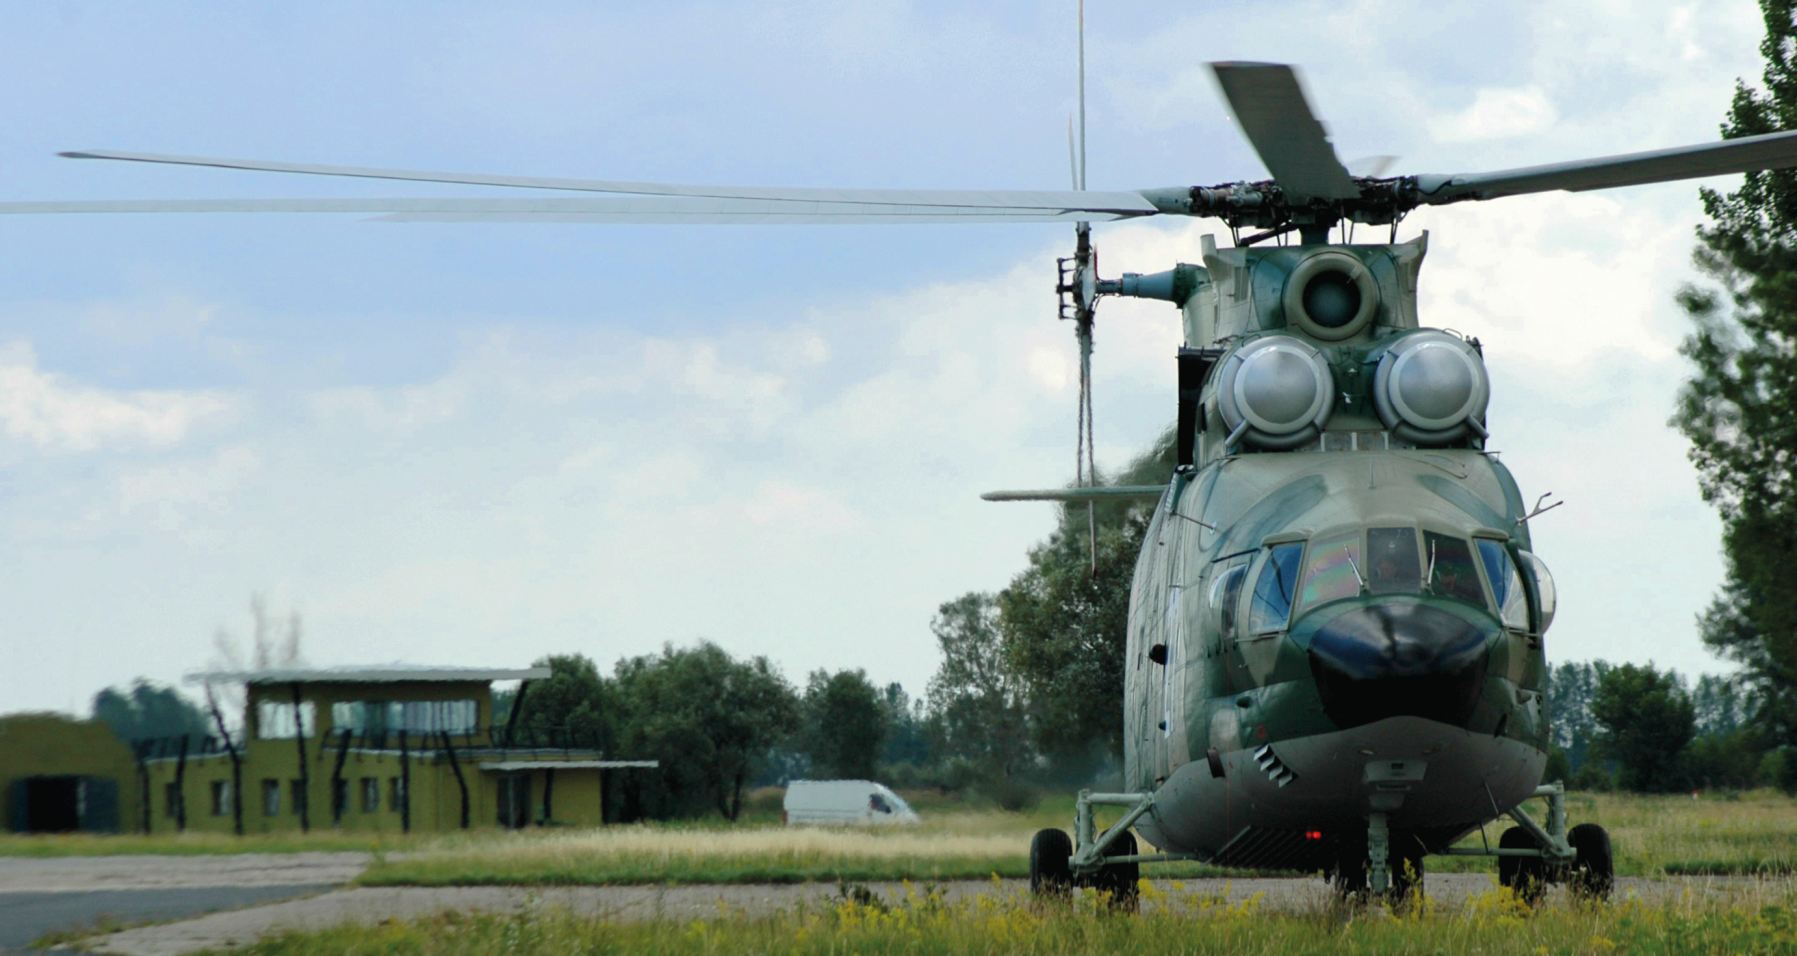 Piros-fehér helyett katonai álcázófestést kapott az óriáshelikopter